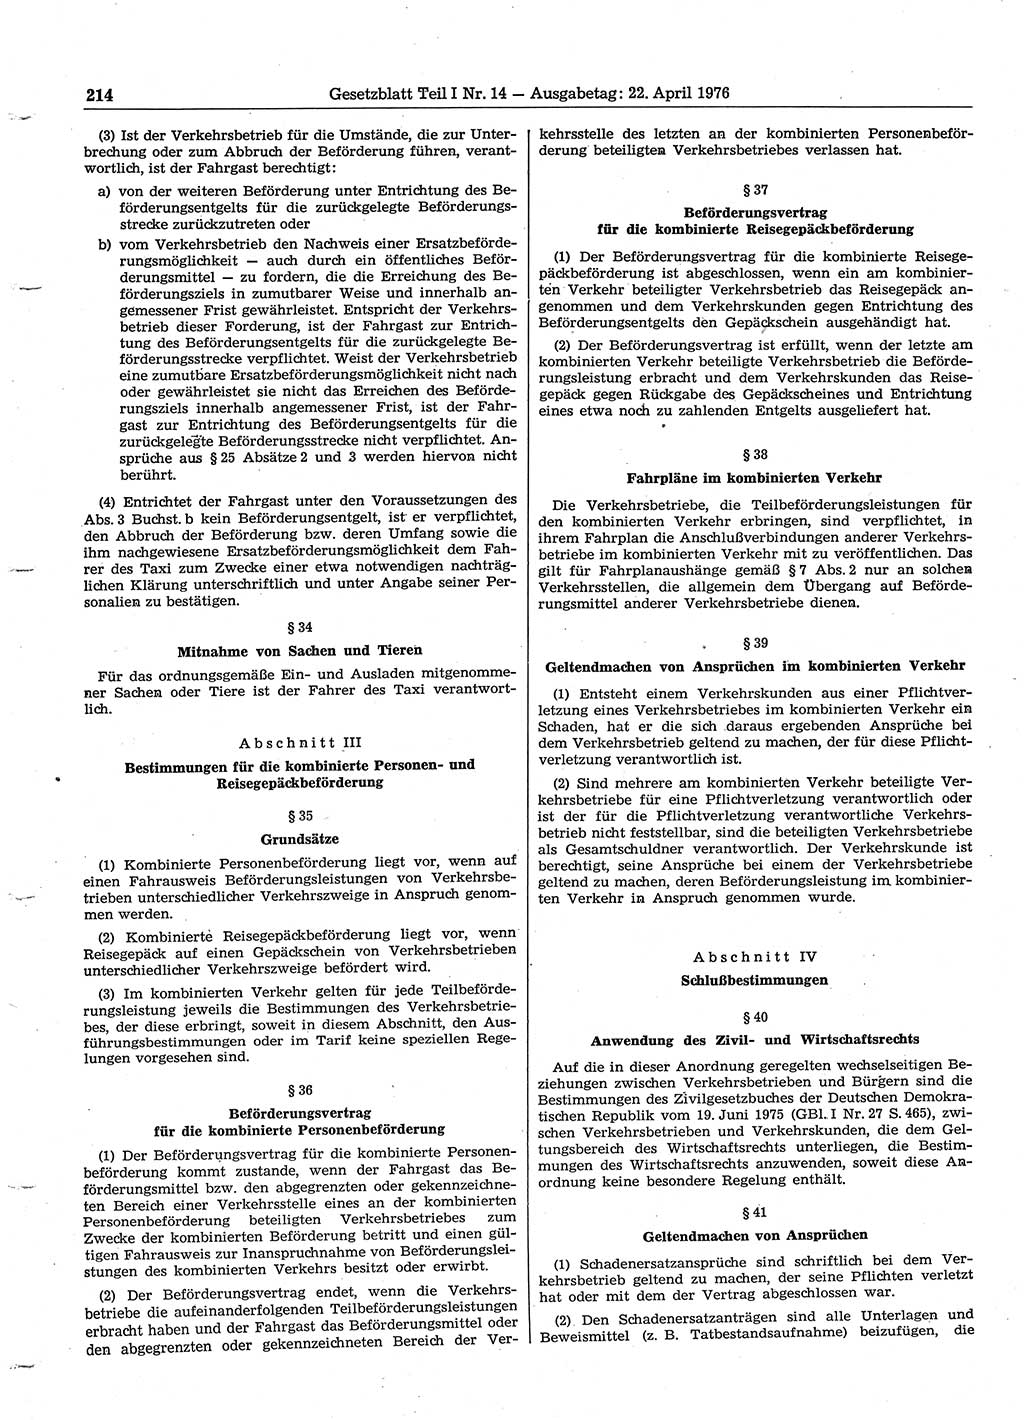 Gesetzblatt (GBl.) der Deutschen Demokratischen Republik (DDR) Teil Ⅰ 1976, Seite 214 (GBl. DDR Ⅰ 1976, S. 214)